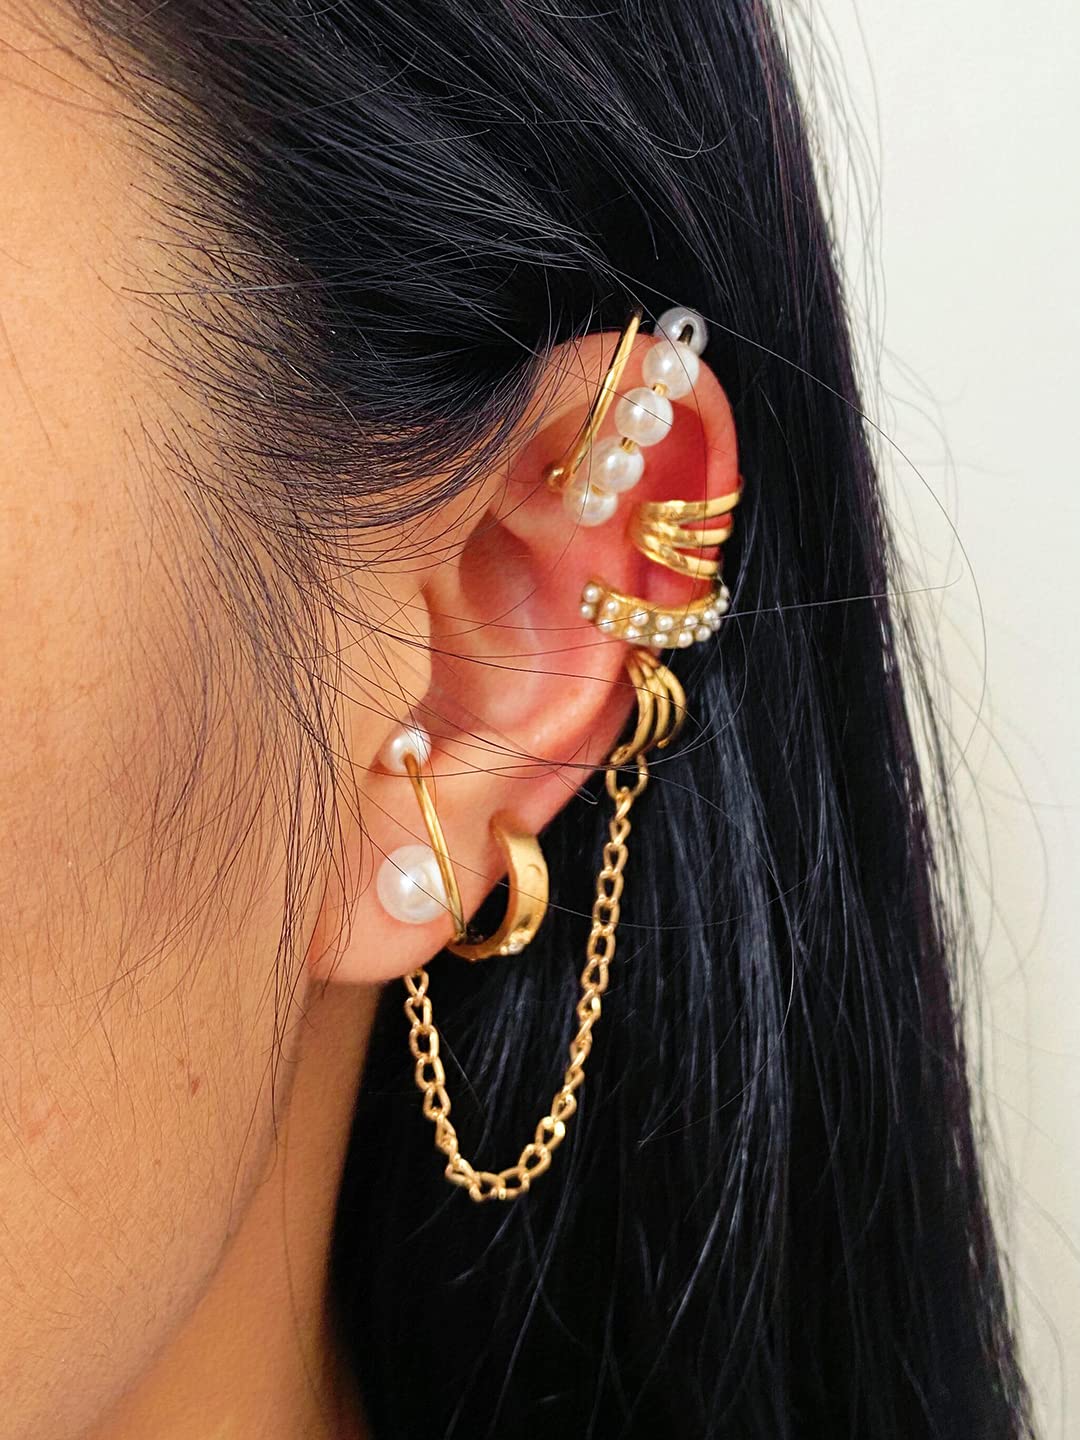 Gold & Gem Ear Cuff Earrings & Studs Set | Five Below | let go & have fun